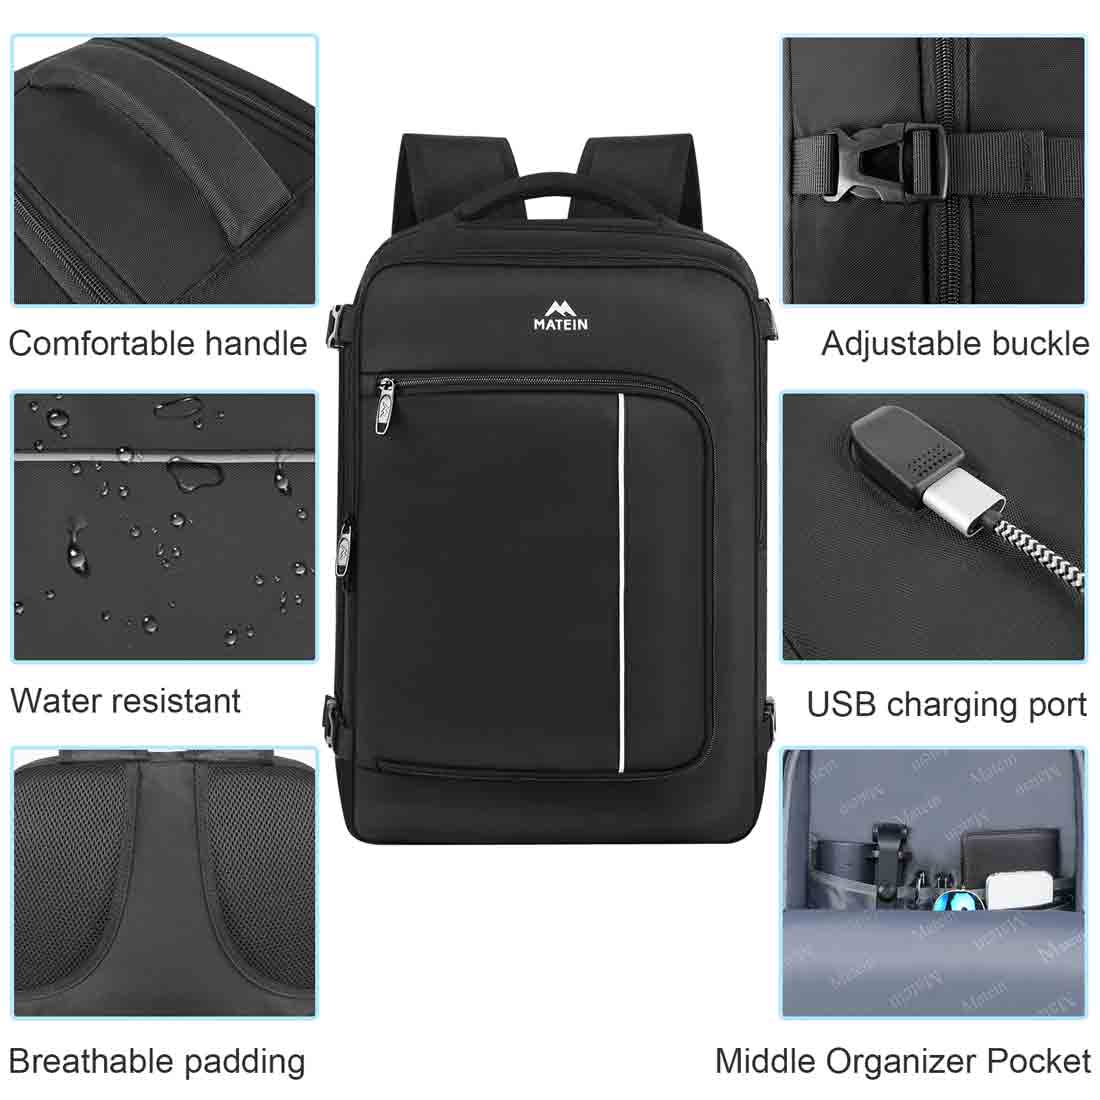 Matein Waterproof Electronics Organizer Storage Bag